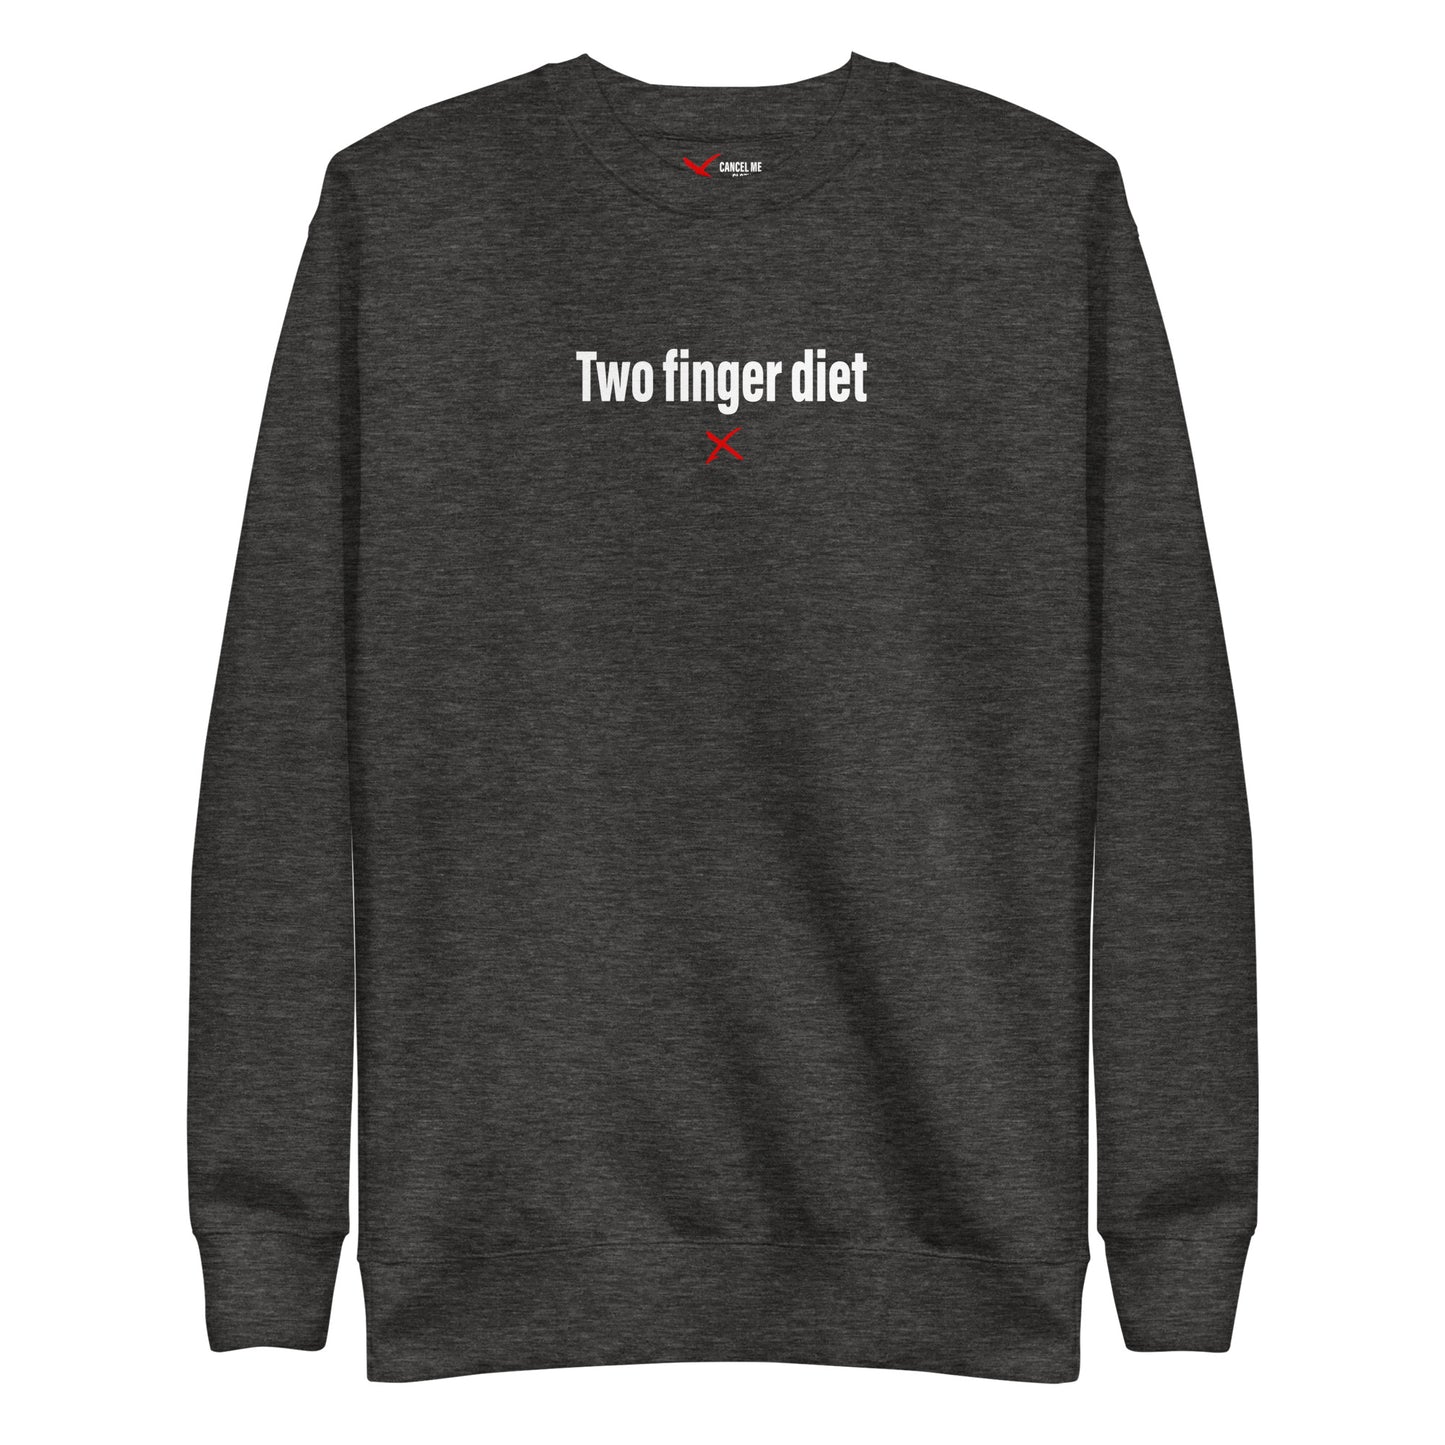 Two finger diet - Sweatshirt